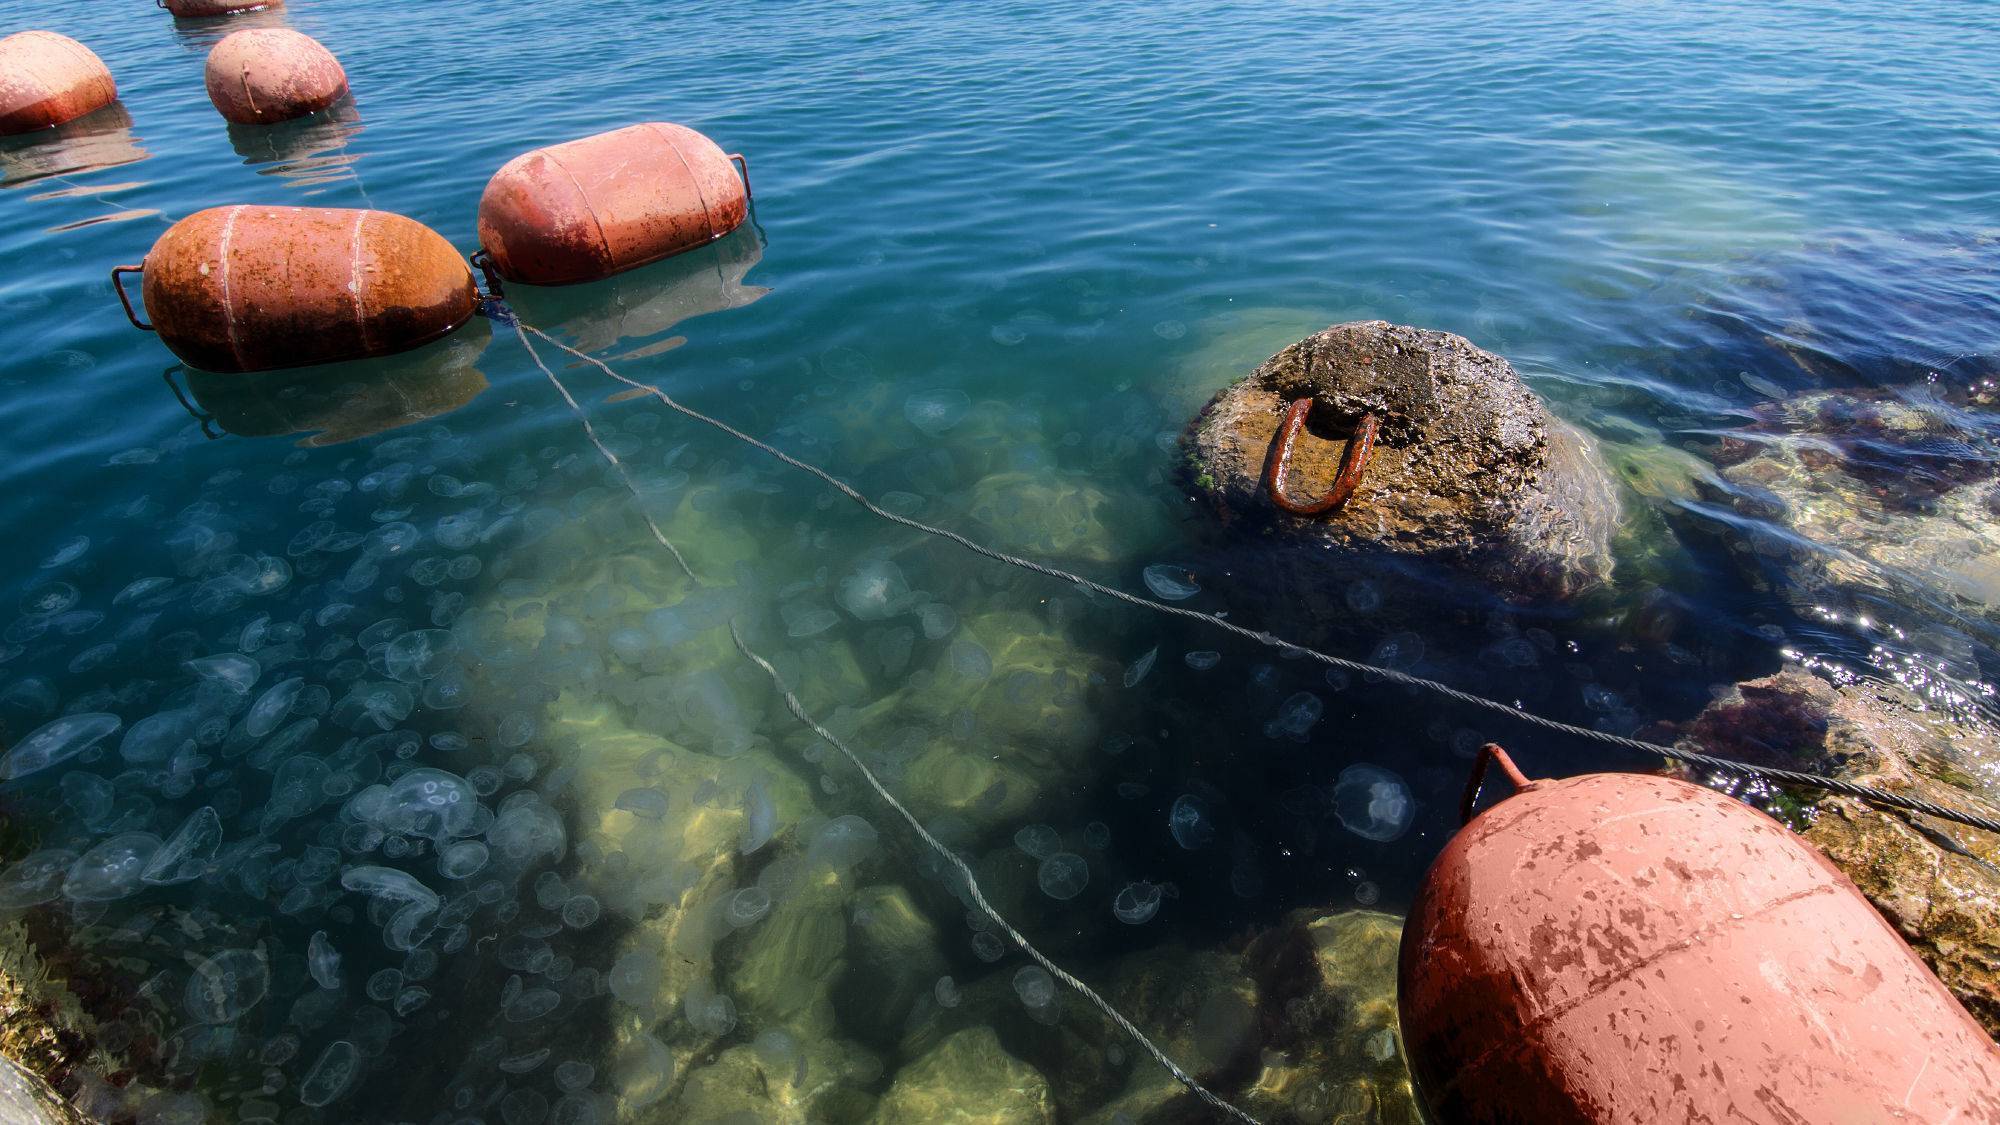 Вылавливание карпа на полуострове в северной части черного моря — Крыму